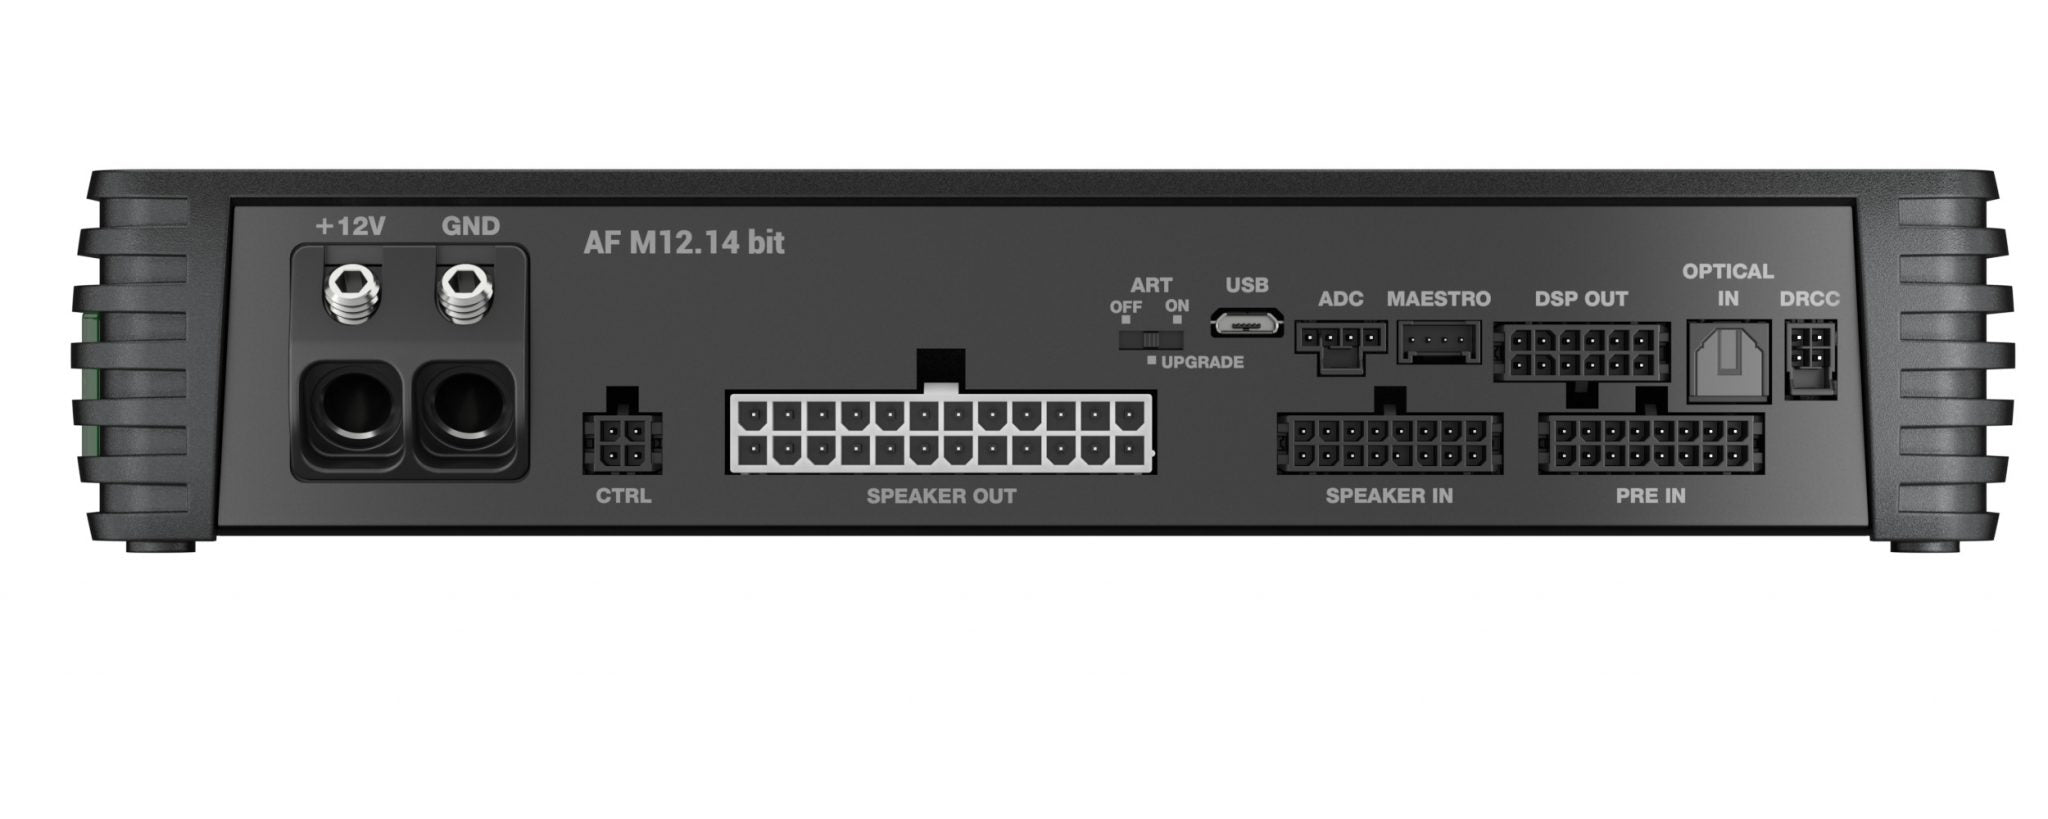 Audison AF M12.14 bit amplificatore a 12 canali con DSP per audio ad alta risoluzione